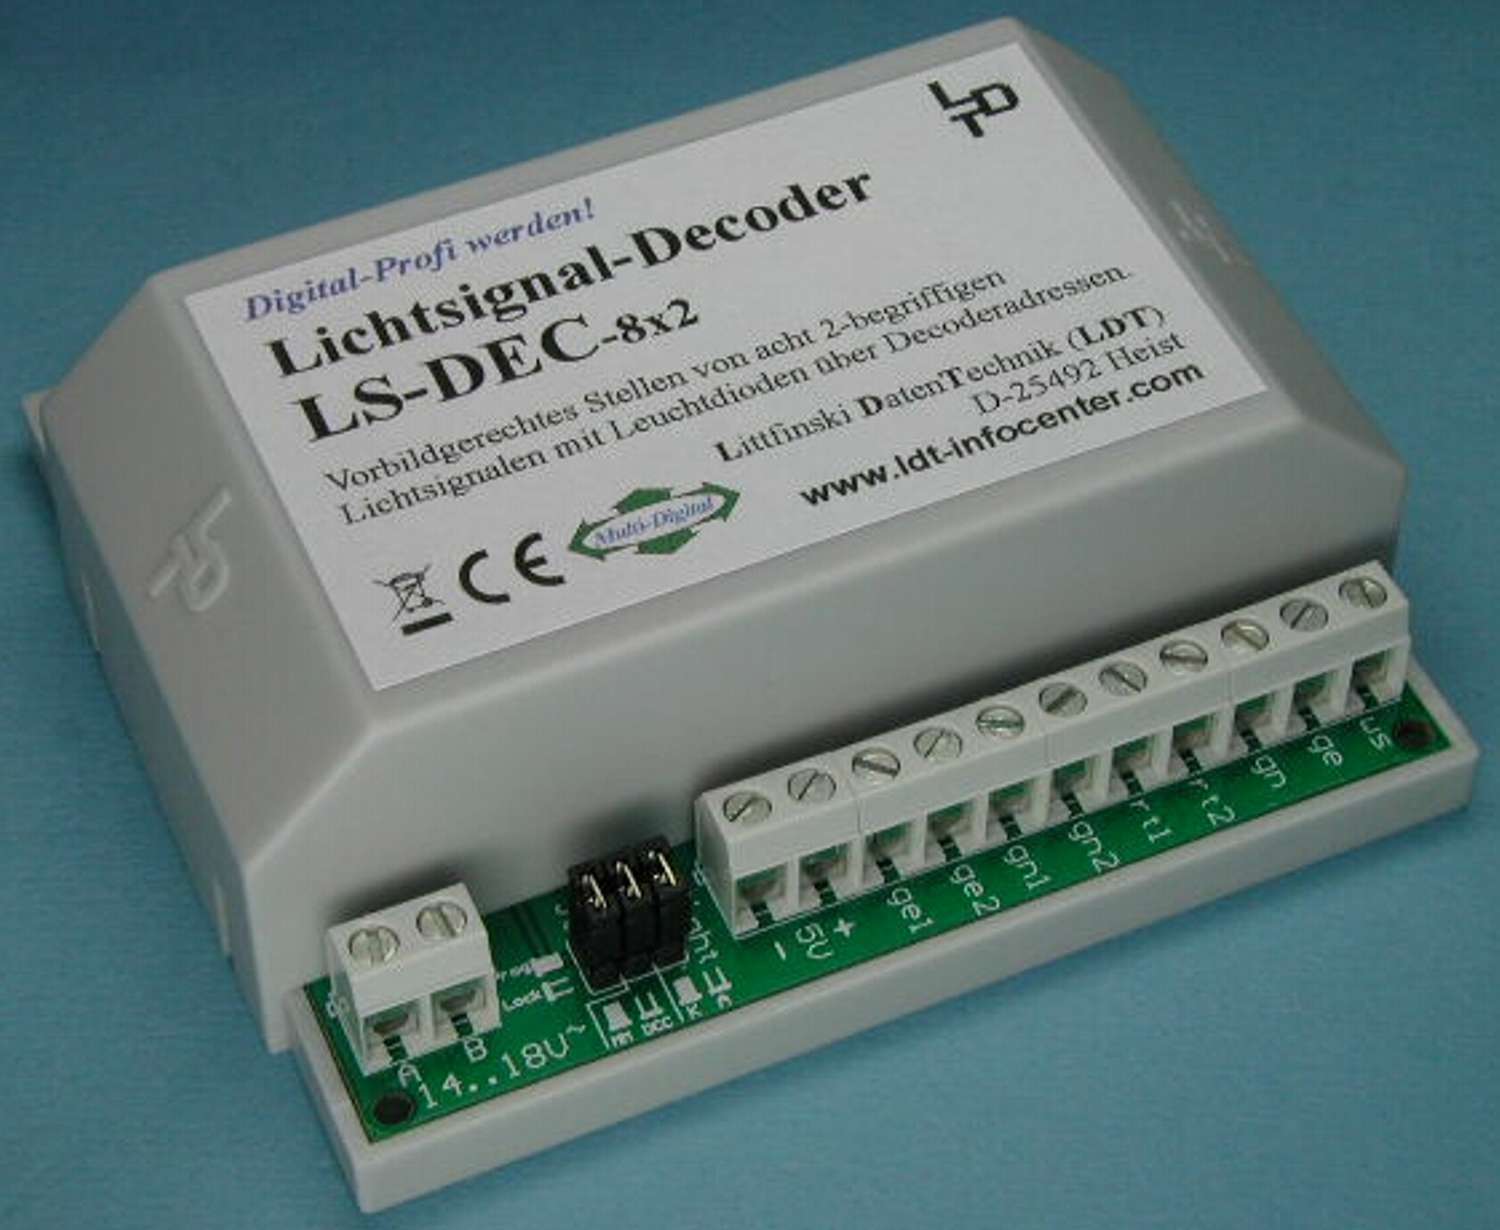 Littfinski 510712 - LS-DEC-8x2-F - Lichtsignaldecoder, 8-fach, für LED-Signale, Fertigmodul